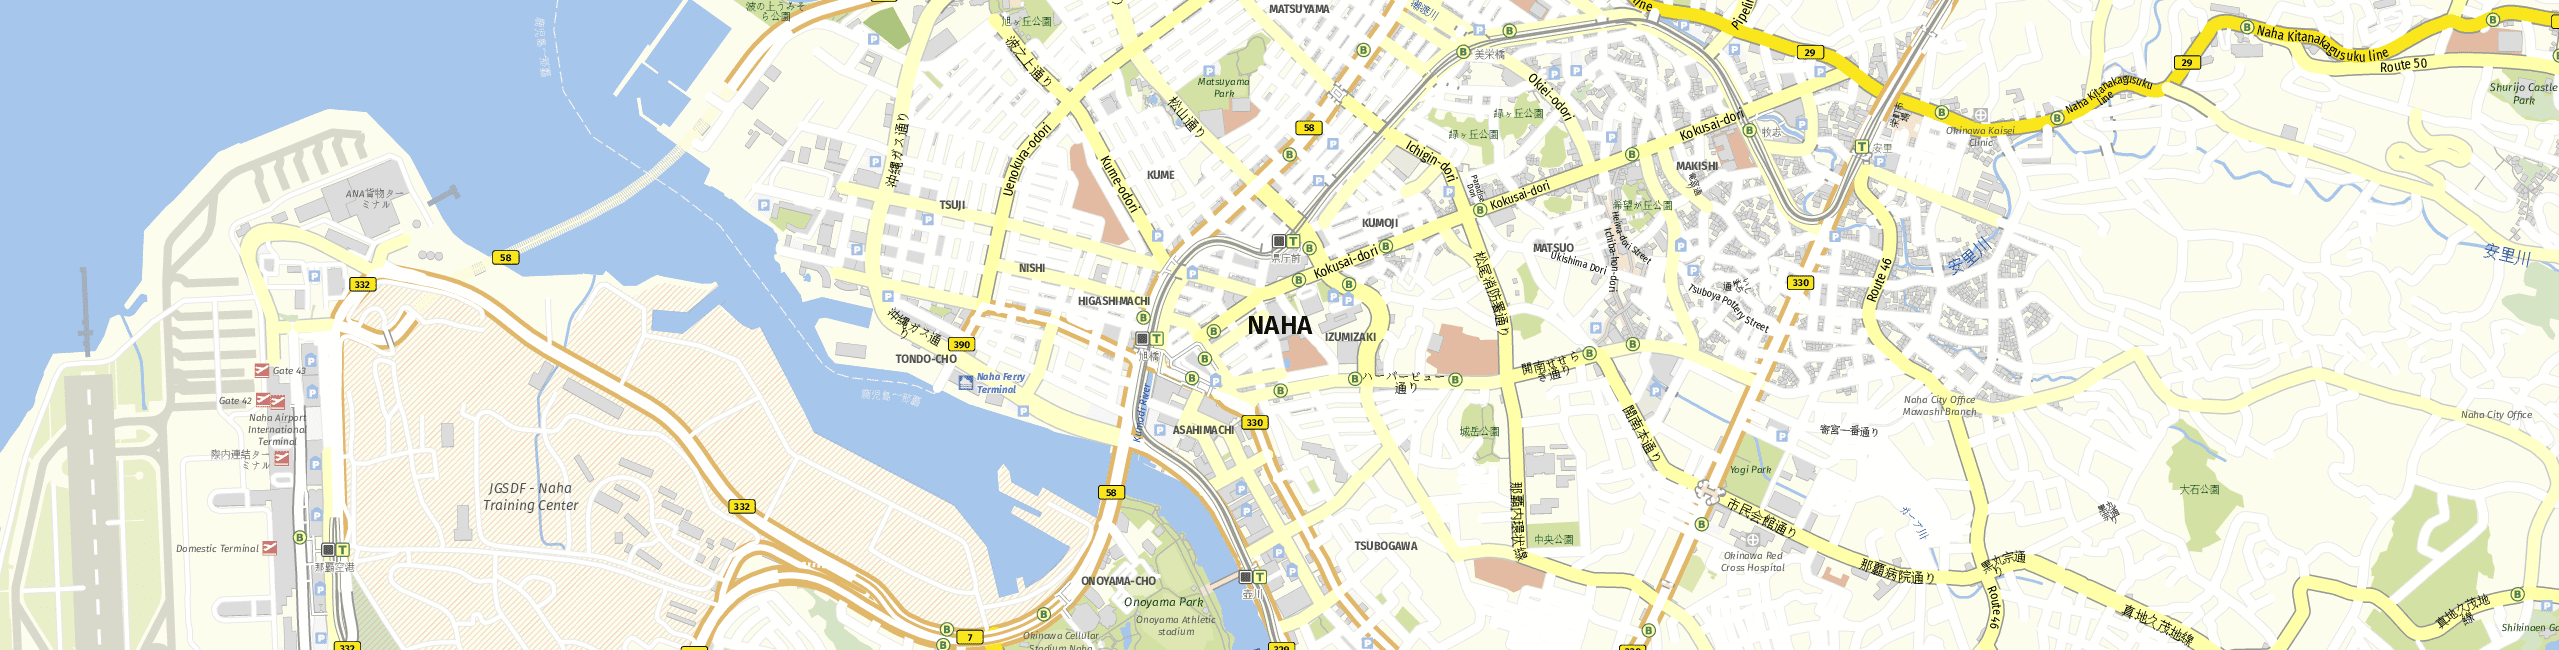 Stadtplan Naha zum Downloaden.